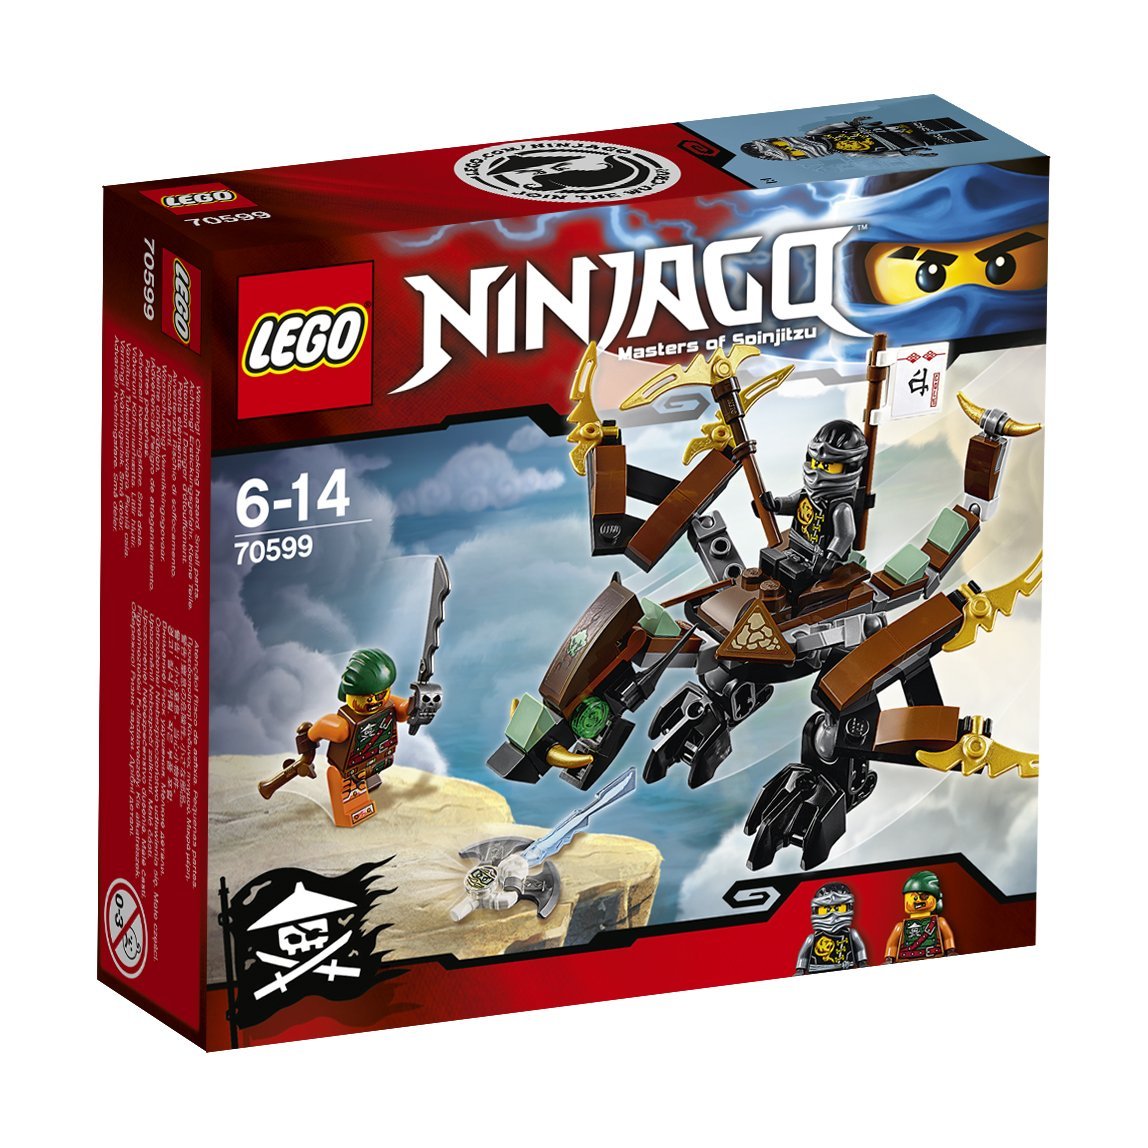 Geruïneerd Geleend Karakteriseren Lego 2016 ninjago Sets and Minifigures - Minifigure Price Guide